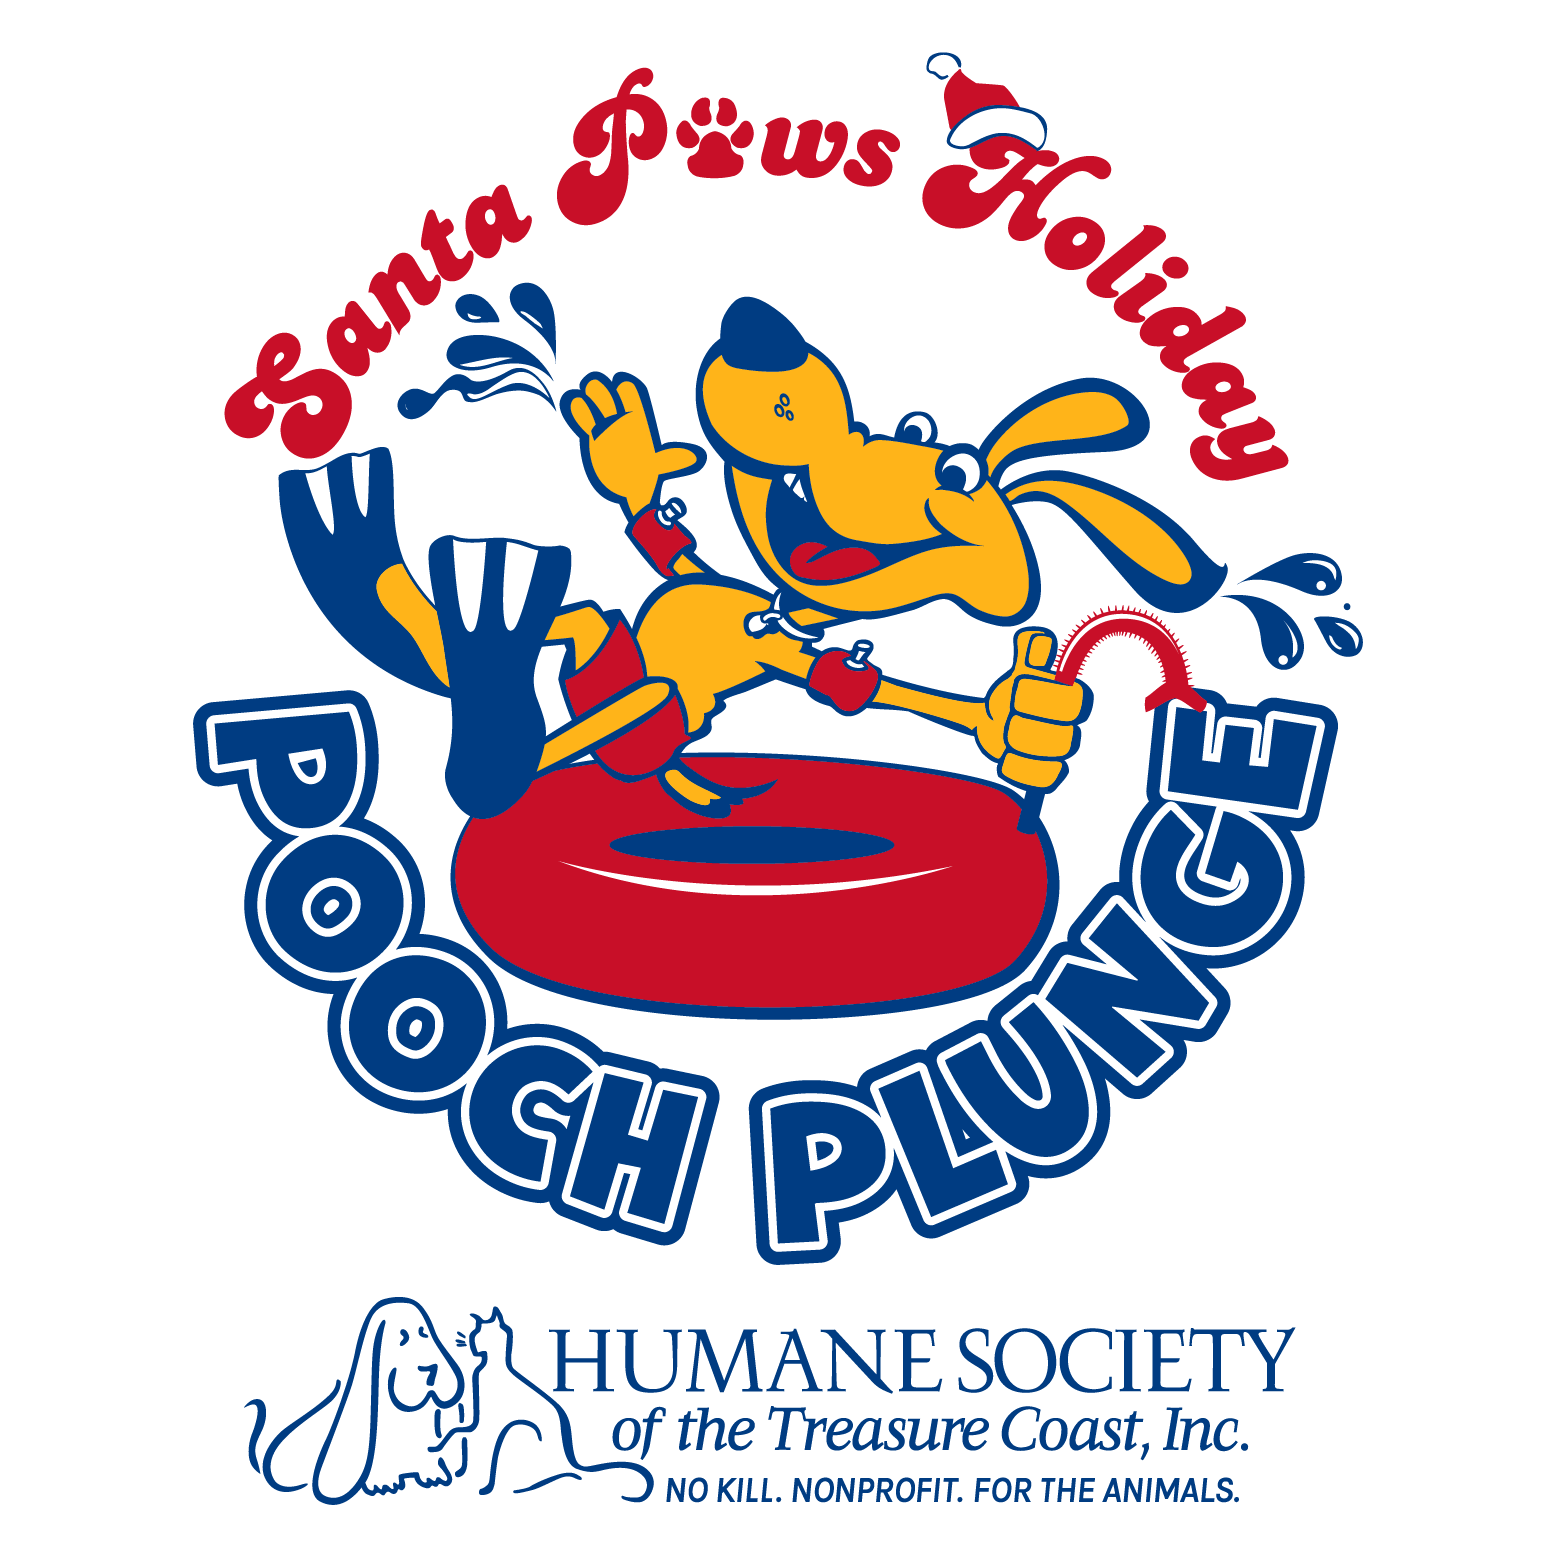 Pooch Plunge 2019 shirt design - zoomed